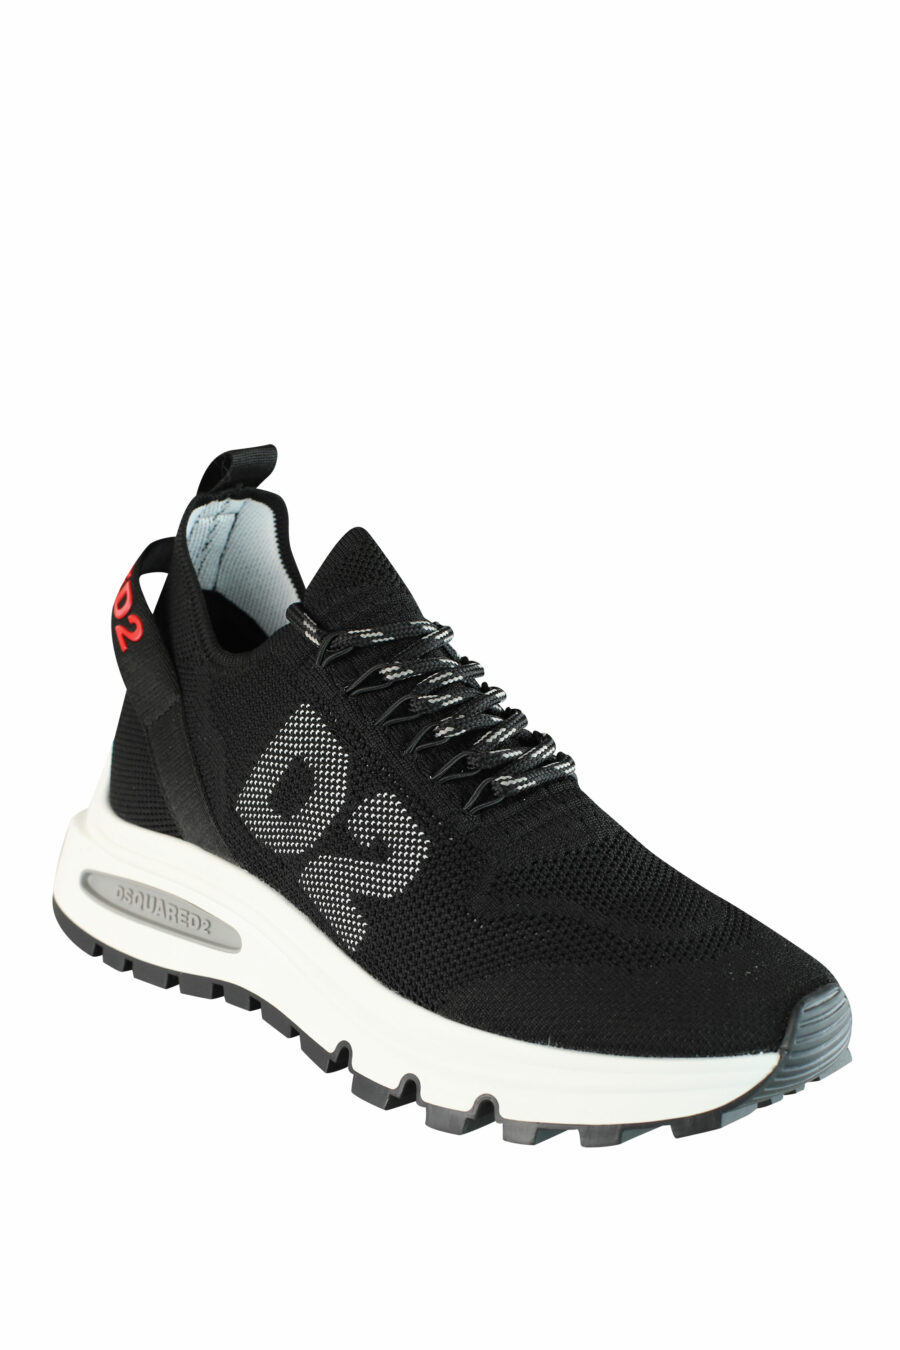 Zapatillas negras "Run D2" con logo en rojo - IMG 1415